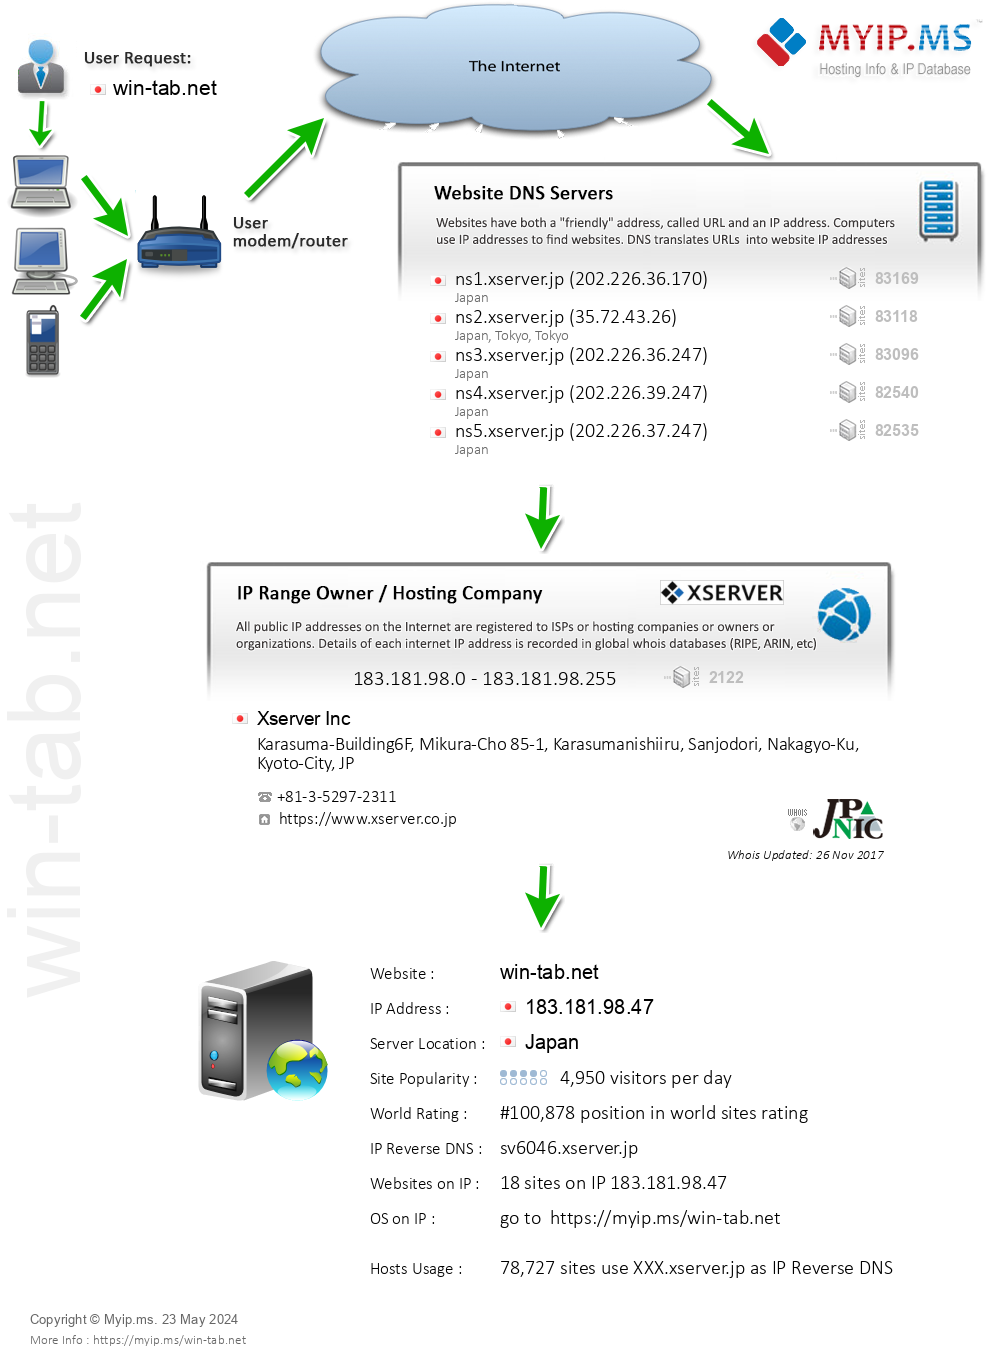 Win-tab.net - Website Hosting Visual IP Diagram